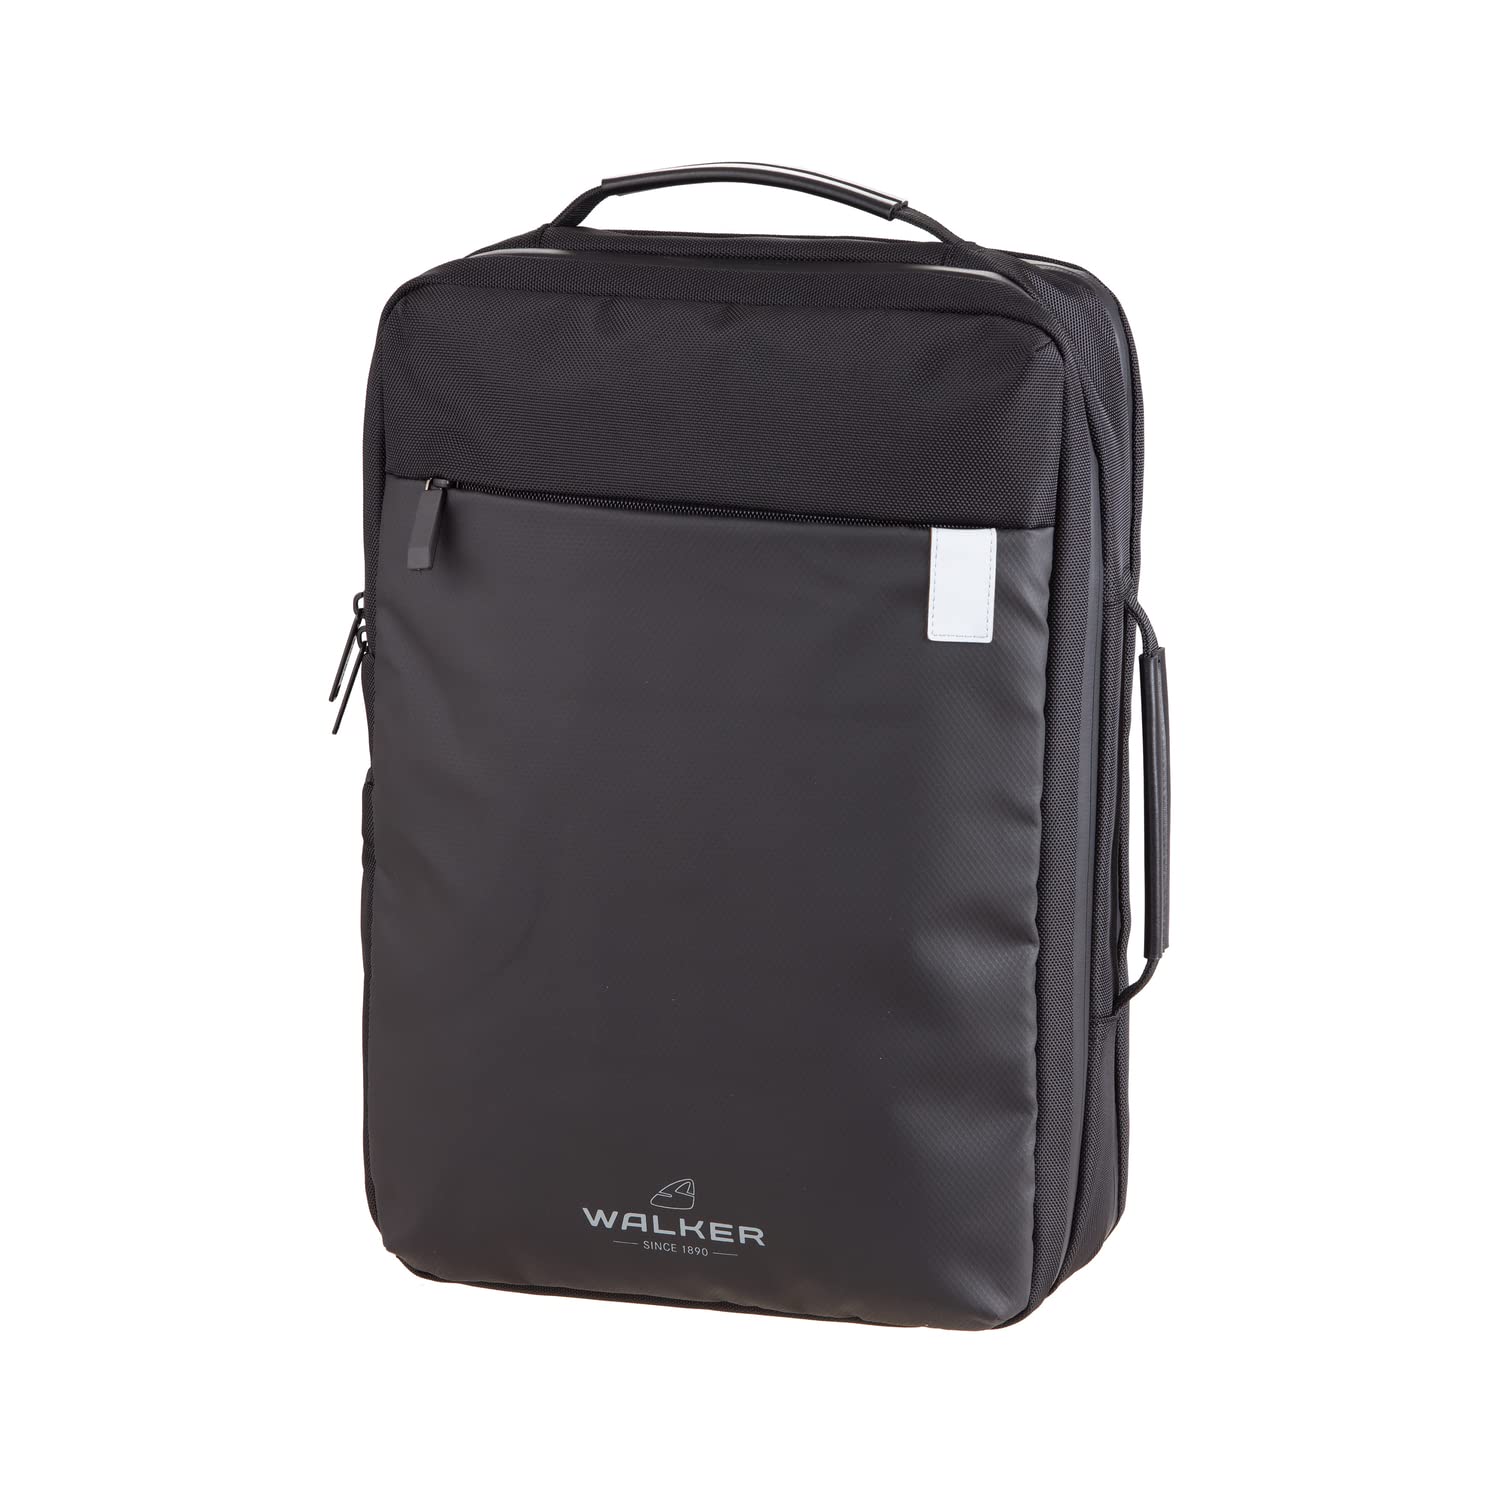 Walker 42176-186 - Business-Rucksack Scope Decent Schwarz mit 3 Reißverschlussfächern, Seitentaschen, Rücken-Polsterung, verstellbare Schultergurte, wasserabweisend, Backpack für Uni und Büro